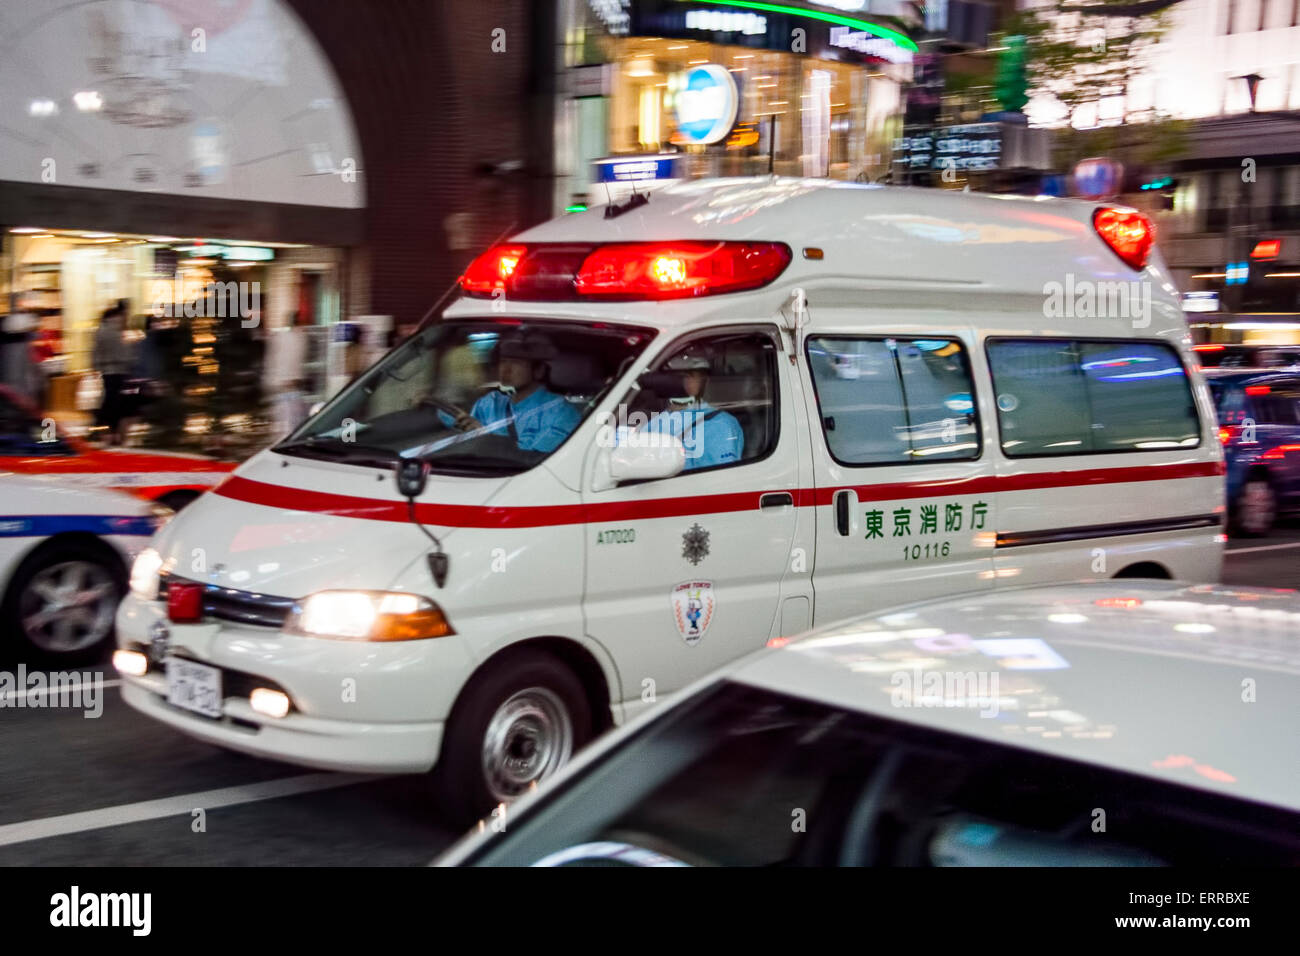 Giappone, la Ginza a Tokyo. L'ambulanza bianca che accelera il passato con le luci rosse lampeggianti, il fuoco di panning sull'ambulanza con la sfocatura di movimento sulla strada circostante. Foto Stock